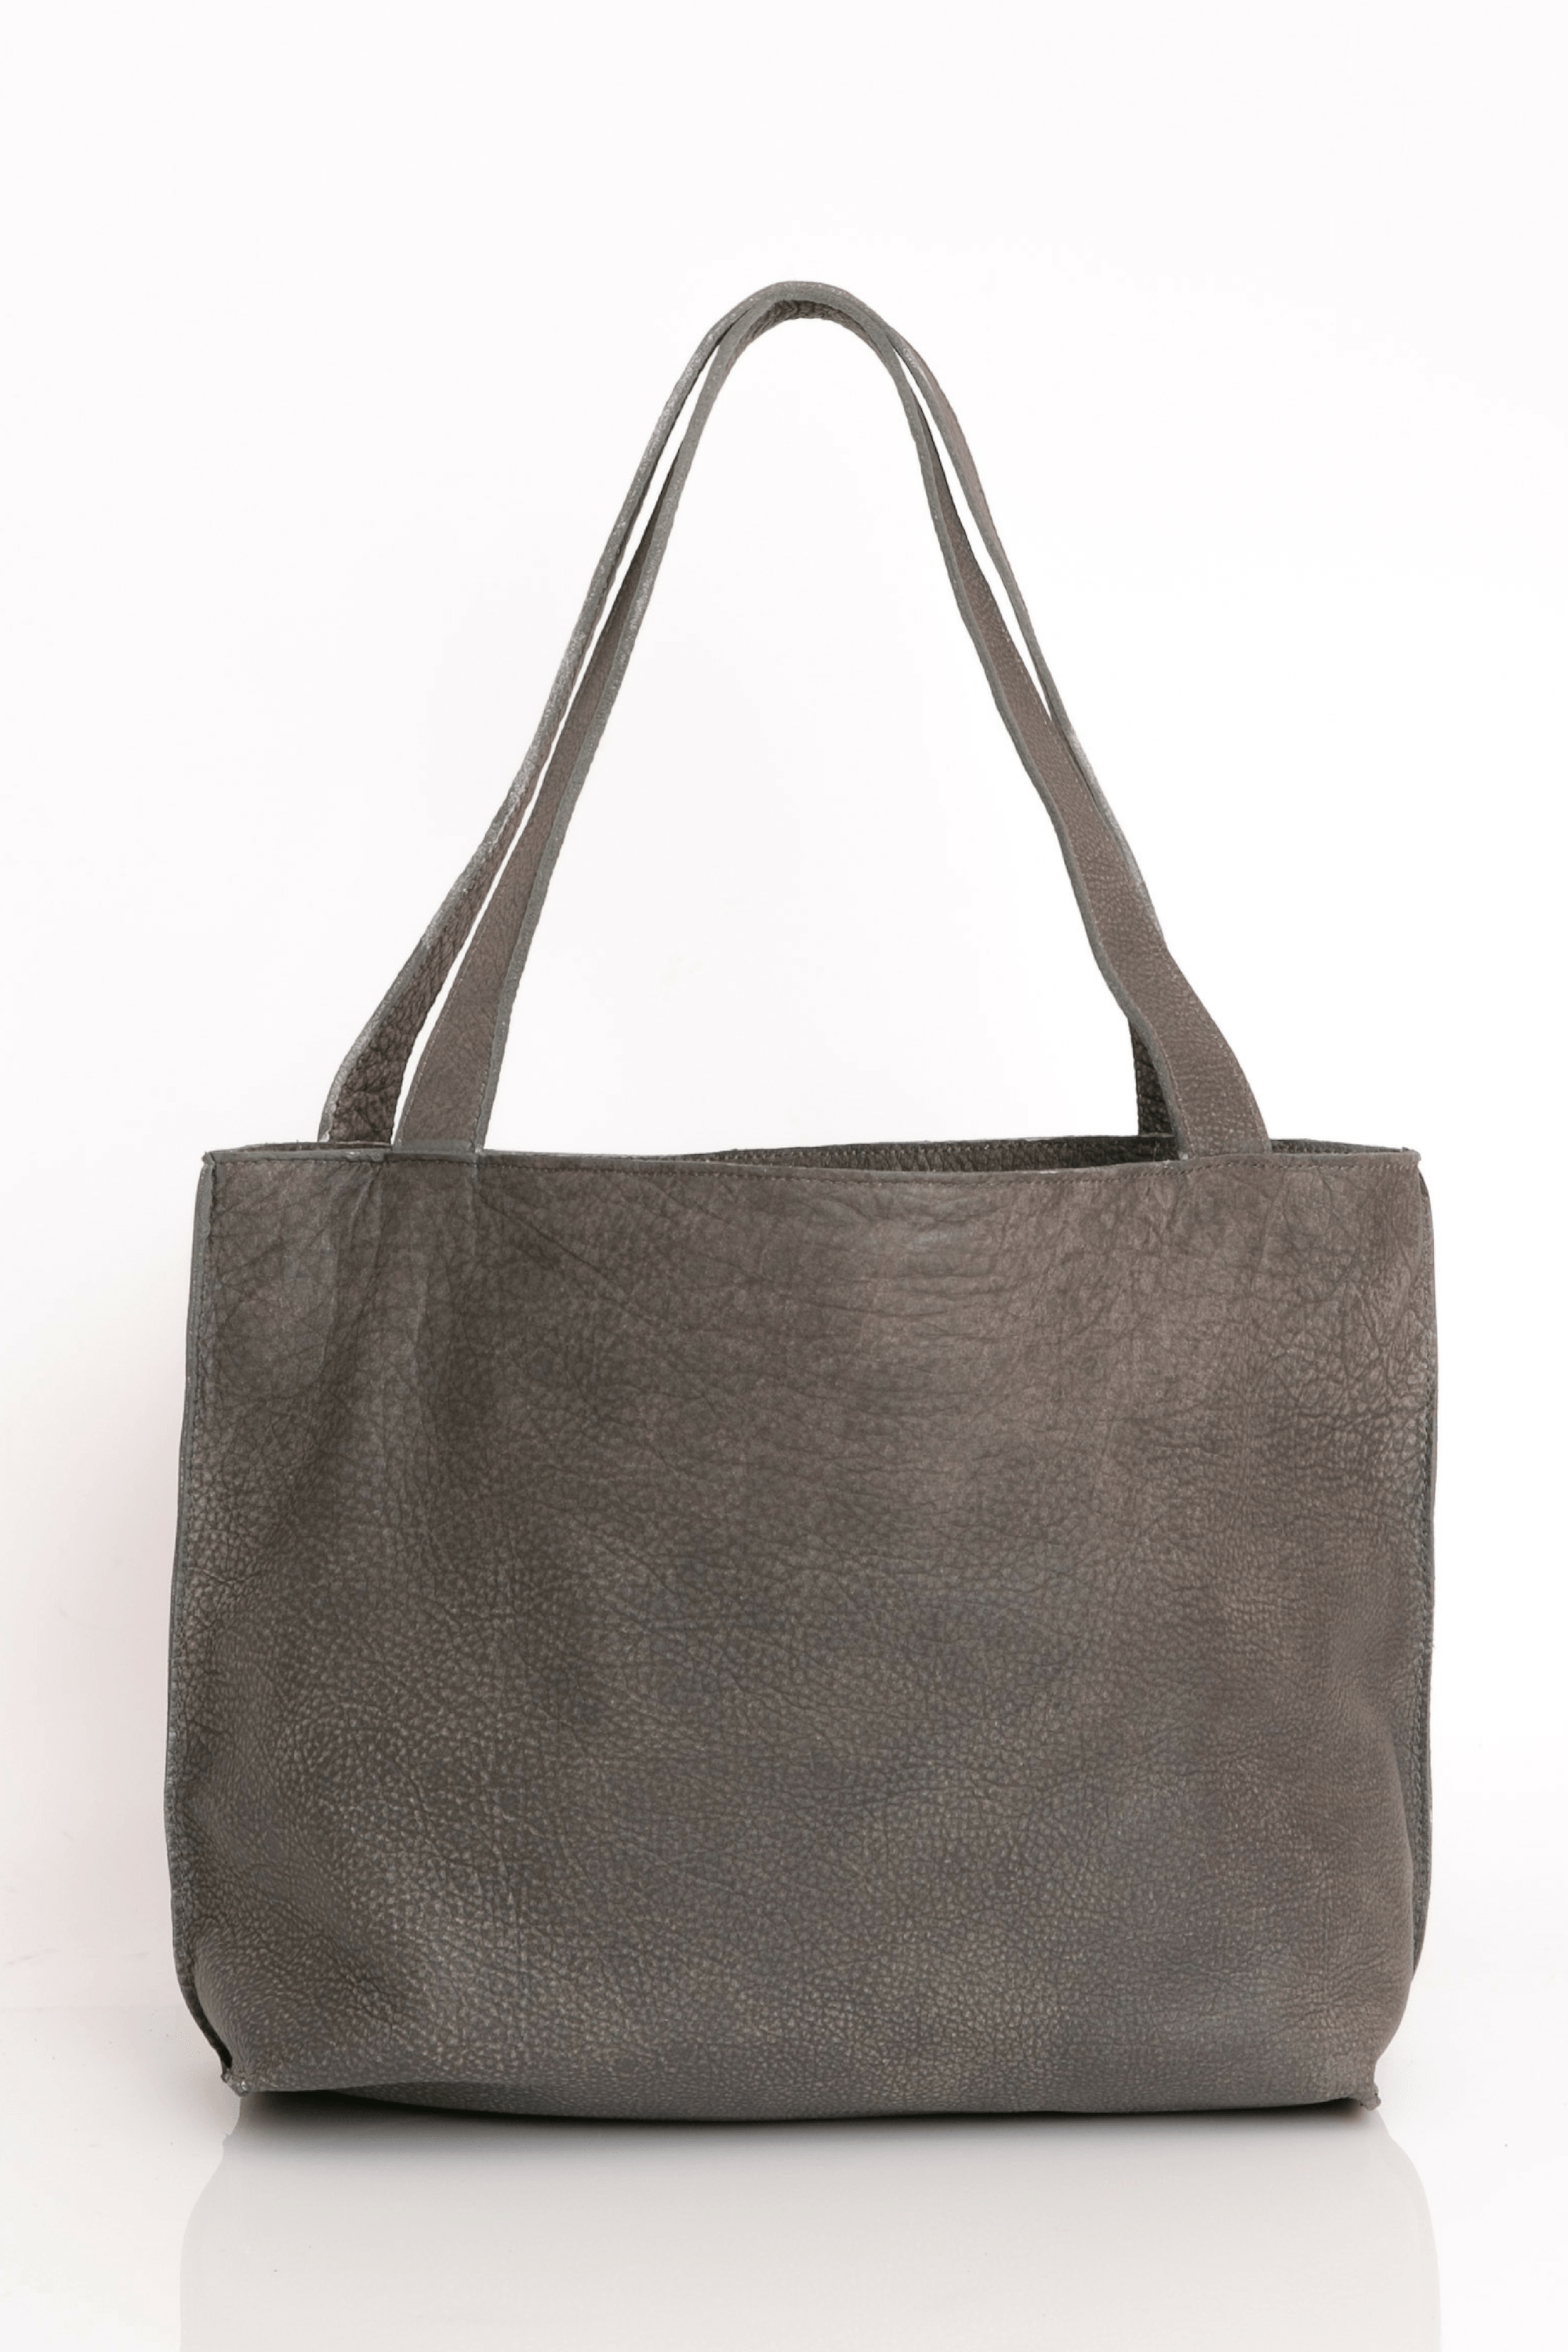 Black Leather Hobo Bag for Women's Leather Shoulder Bag, Shoulder Purs –  LINDSEY STREET